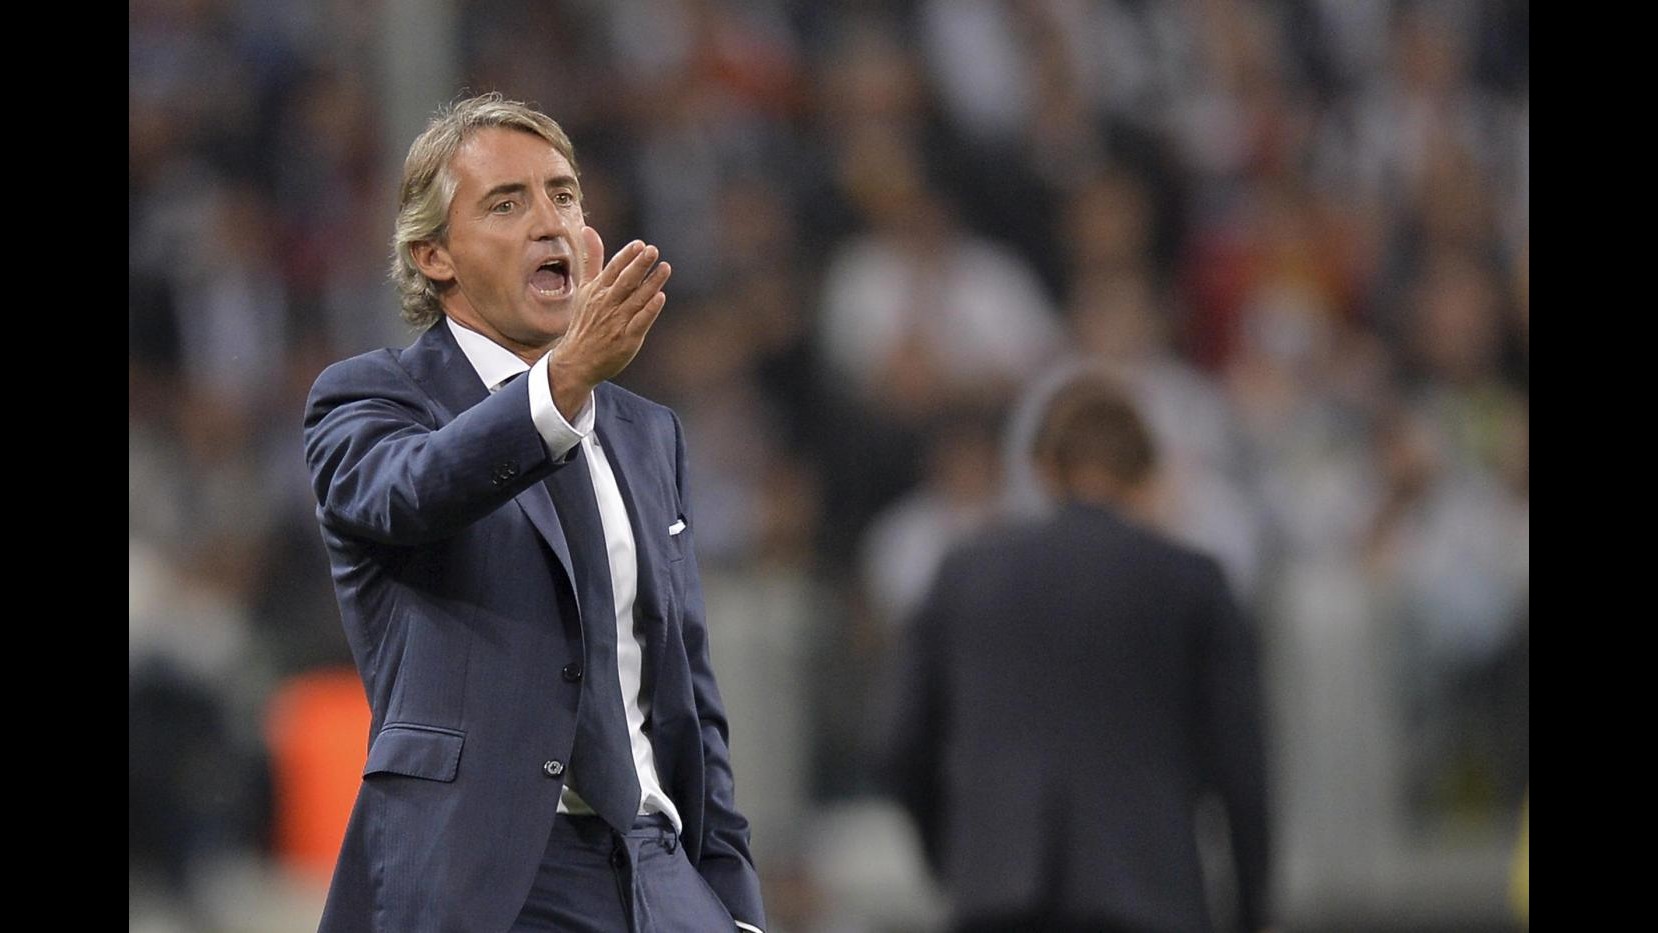 Mancini: Per Allegri non sarà semplice, ma allenare Juve è motivo orgoglio